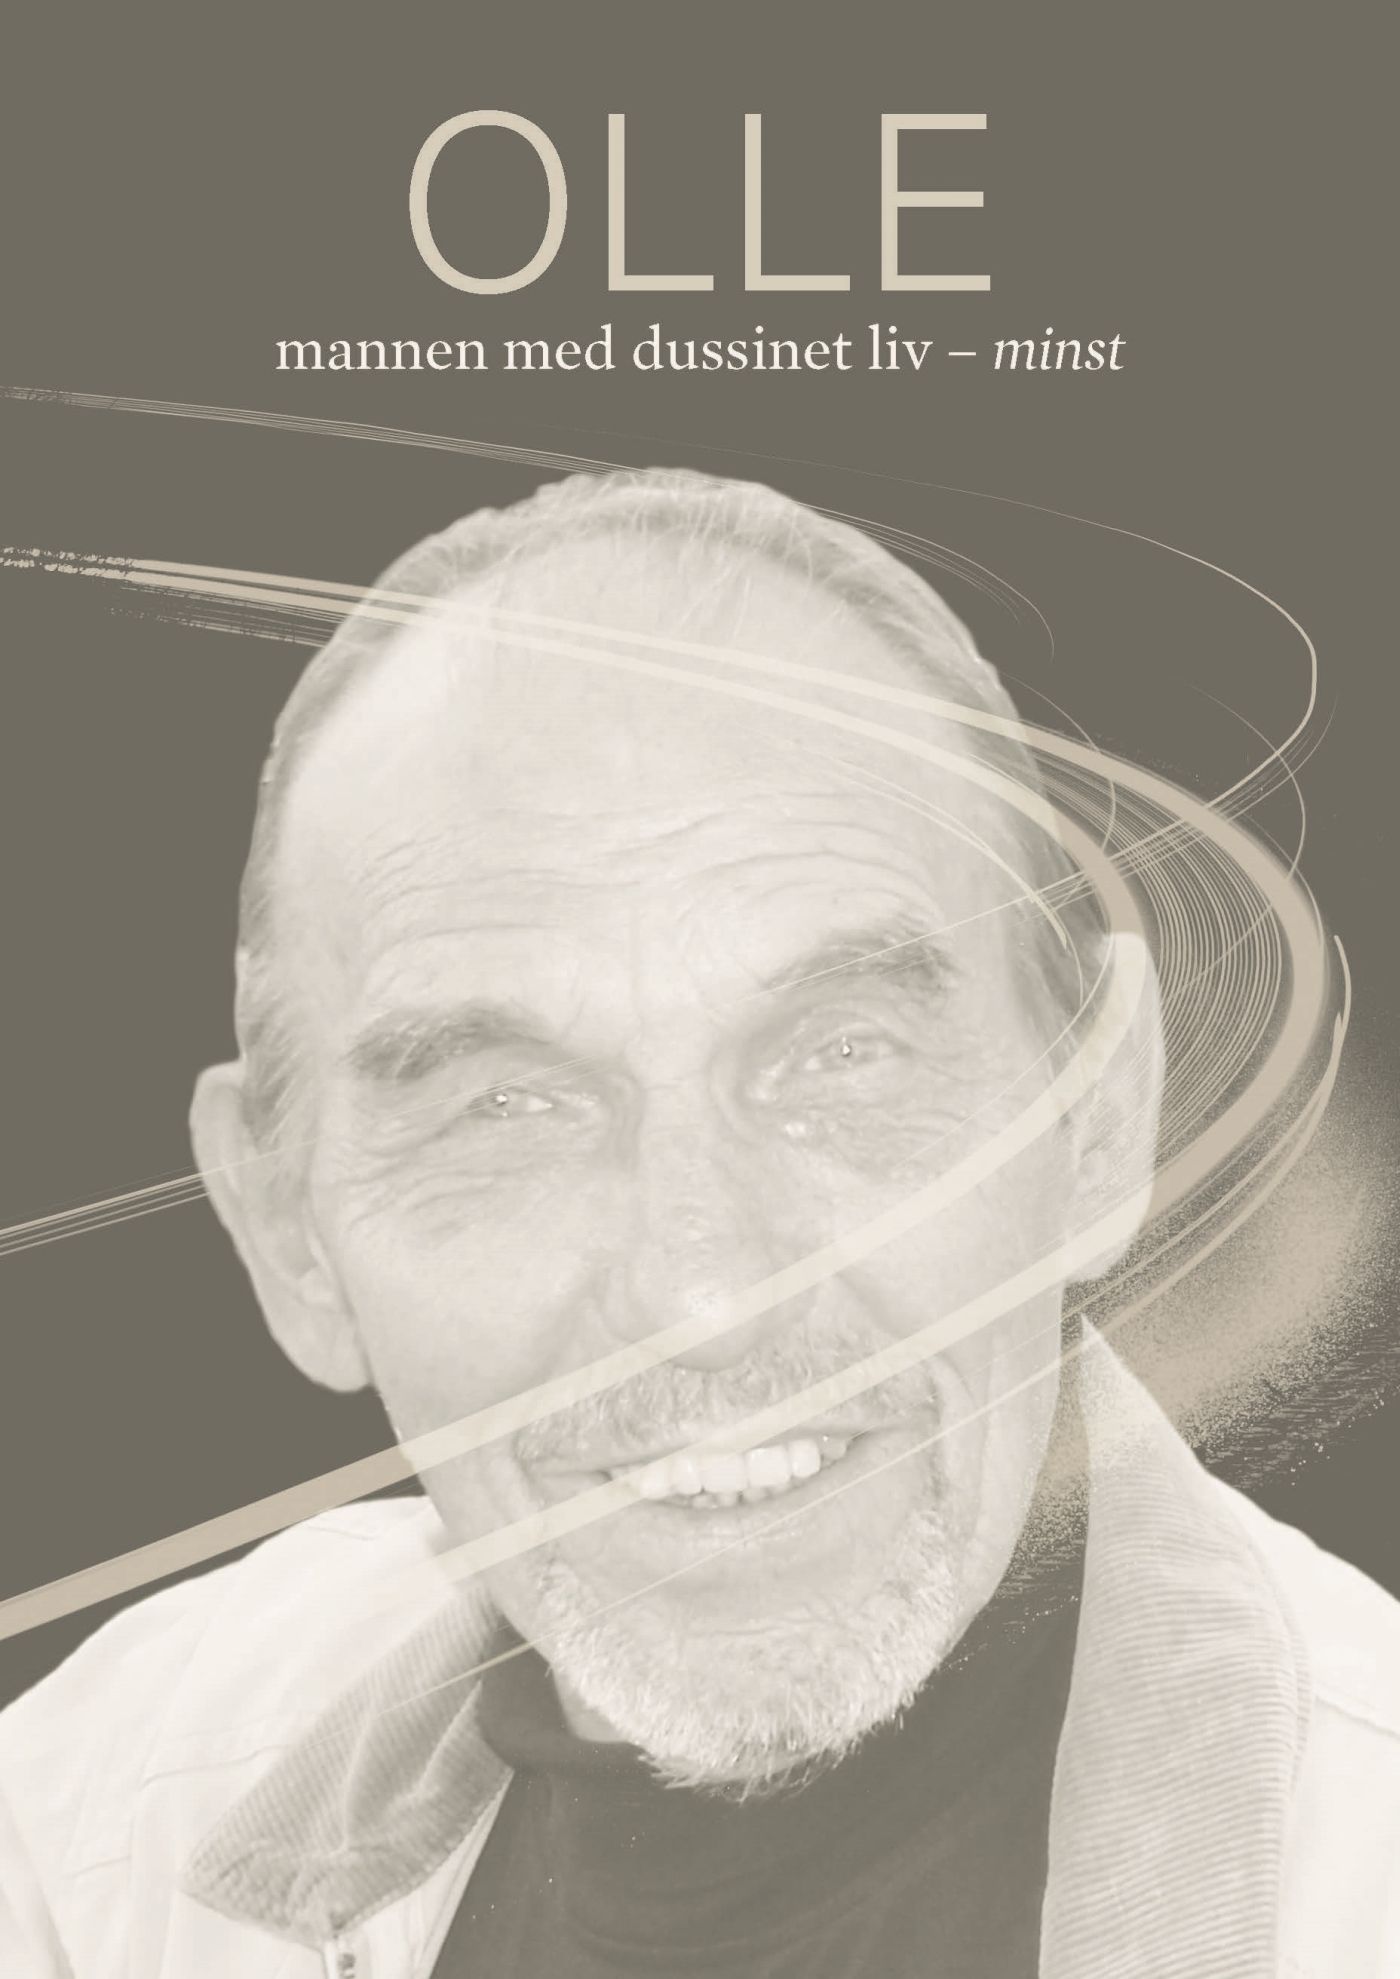 Olle, mannen med dussinet liv - minst., e-bog af Barbro Robertsson Strand